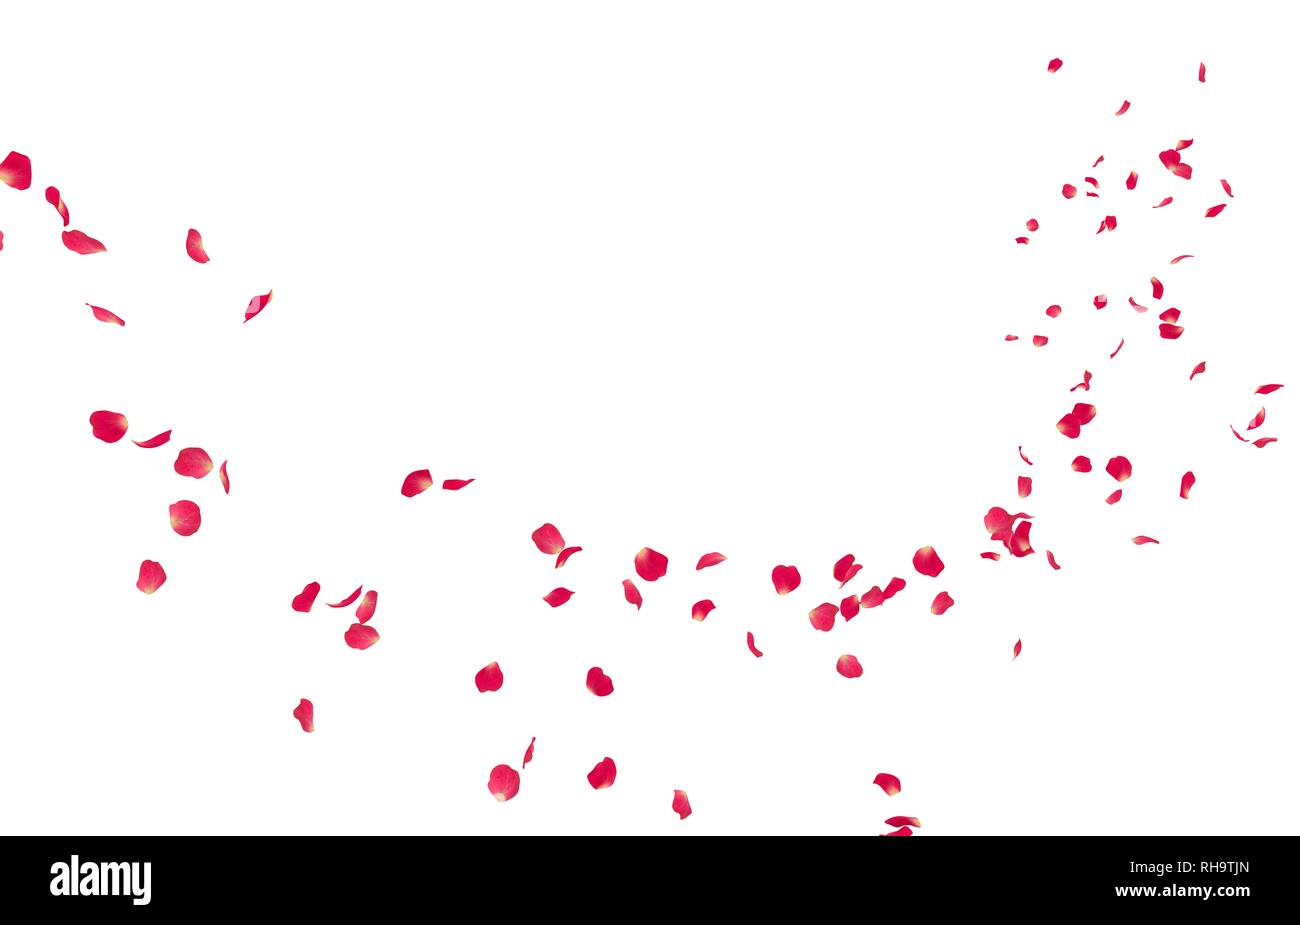 Red petali di rosa volare in distanza. Isolato sfondo bianco Foto Stock